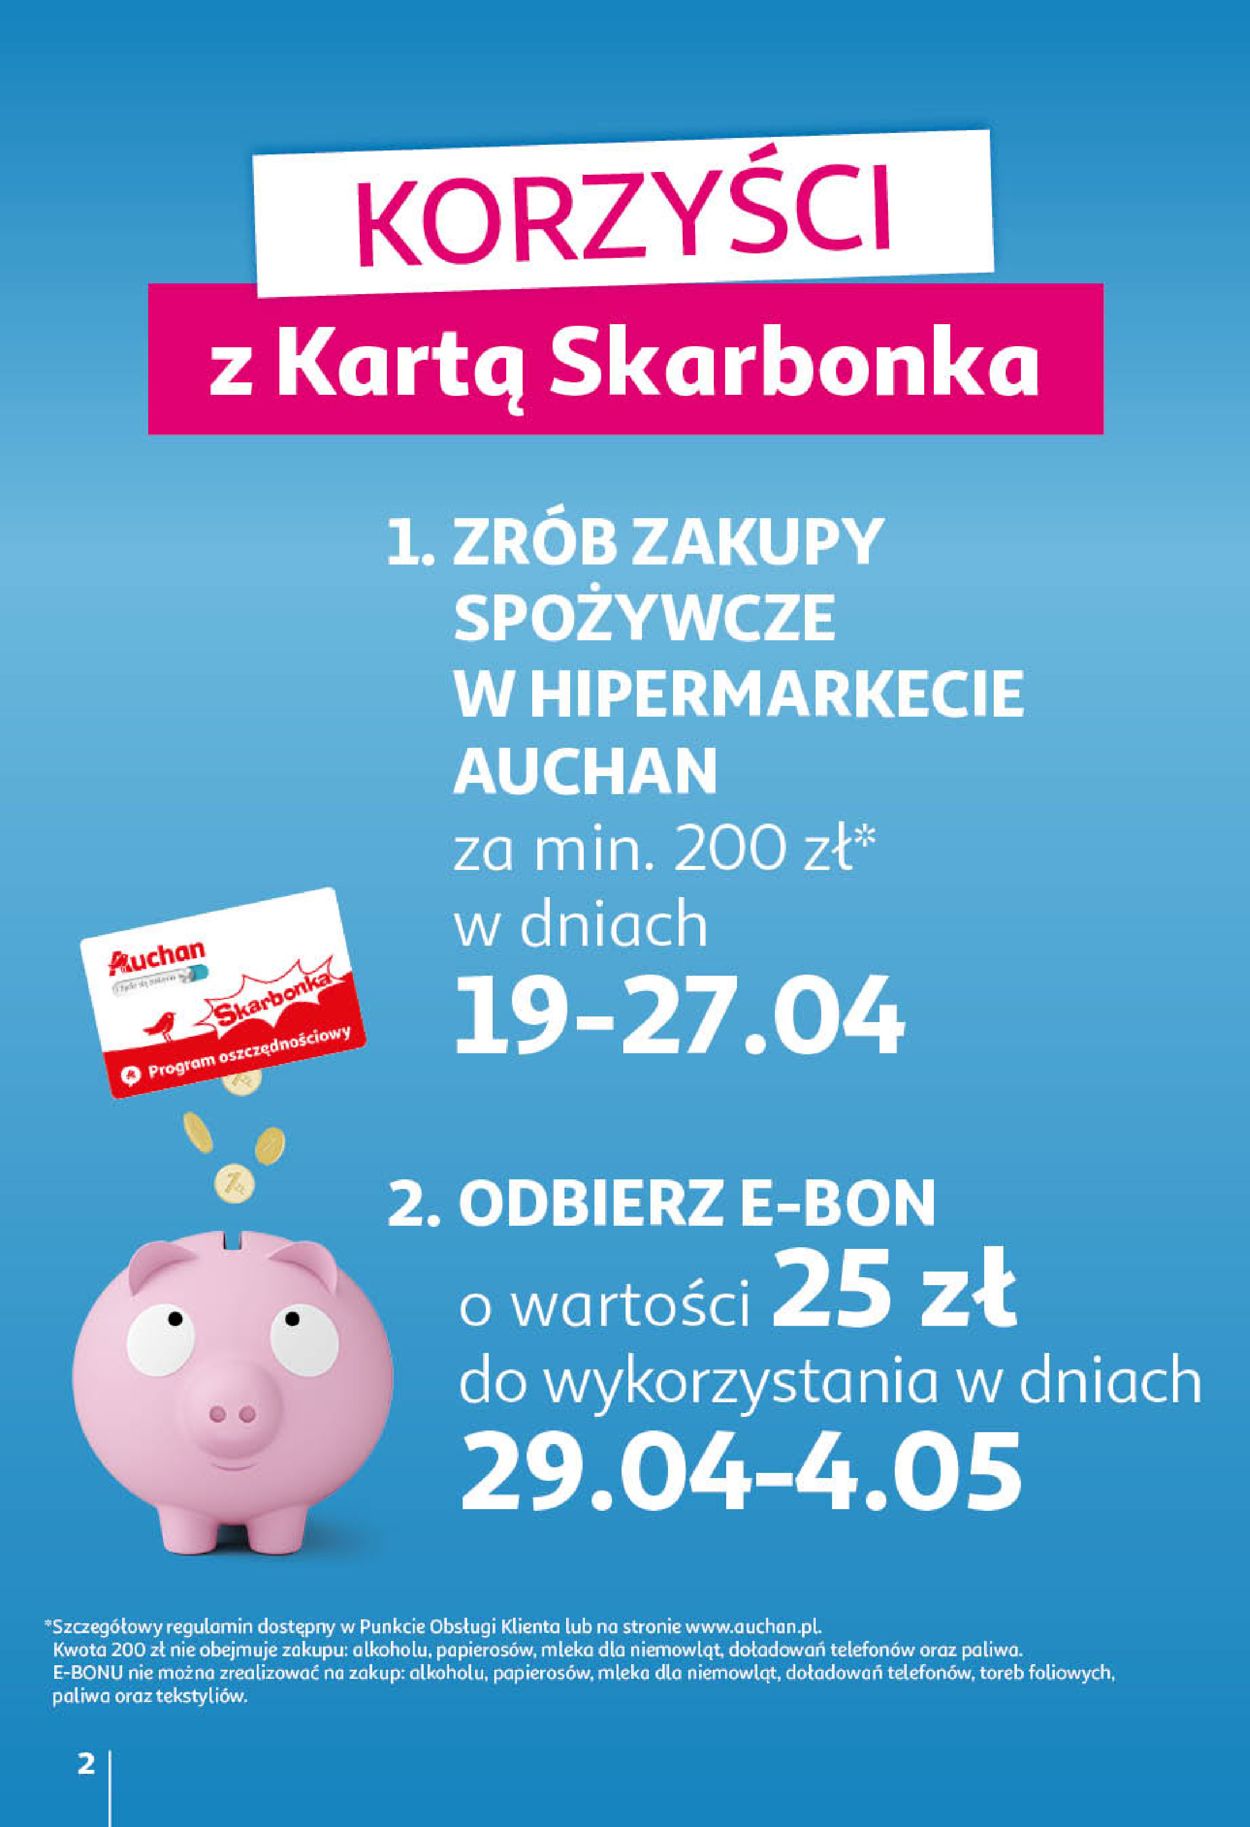 Auchan Gazetka od 21.04.2022